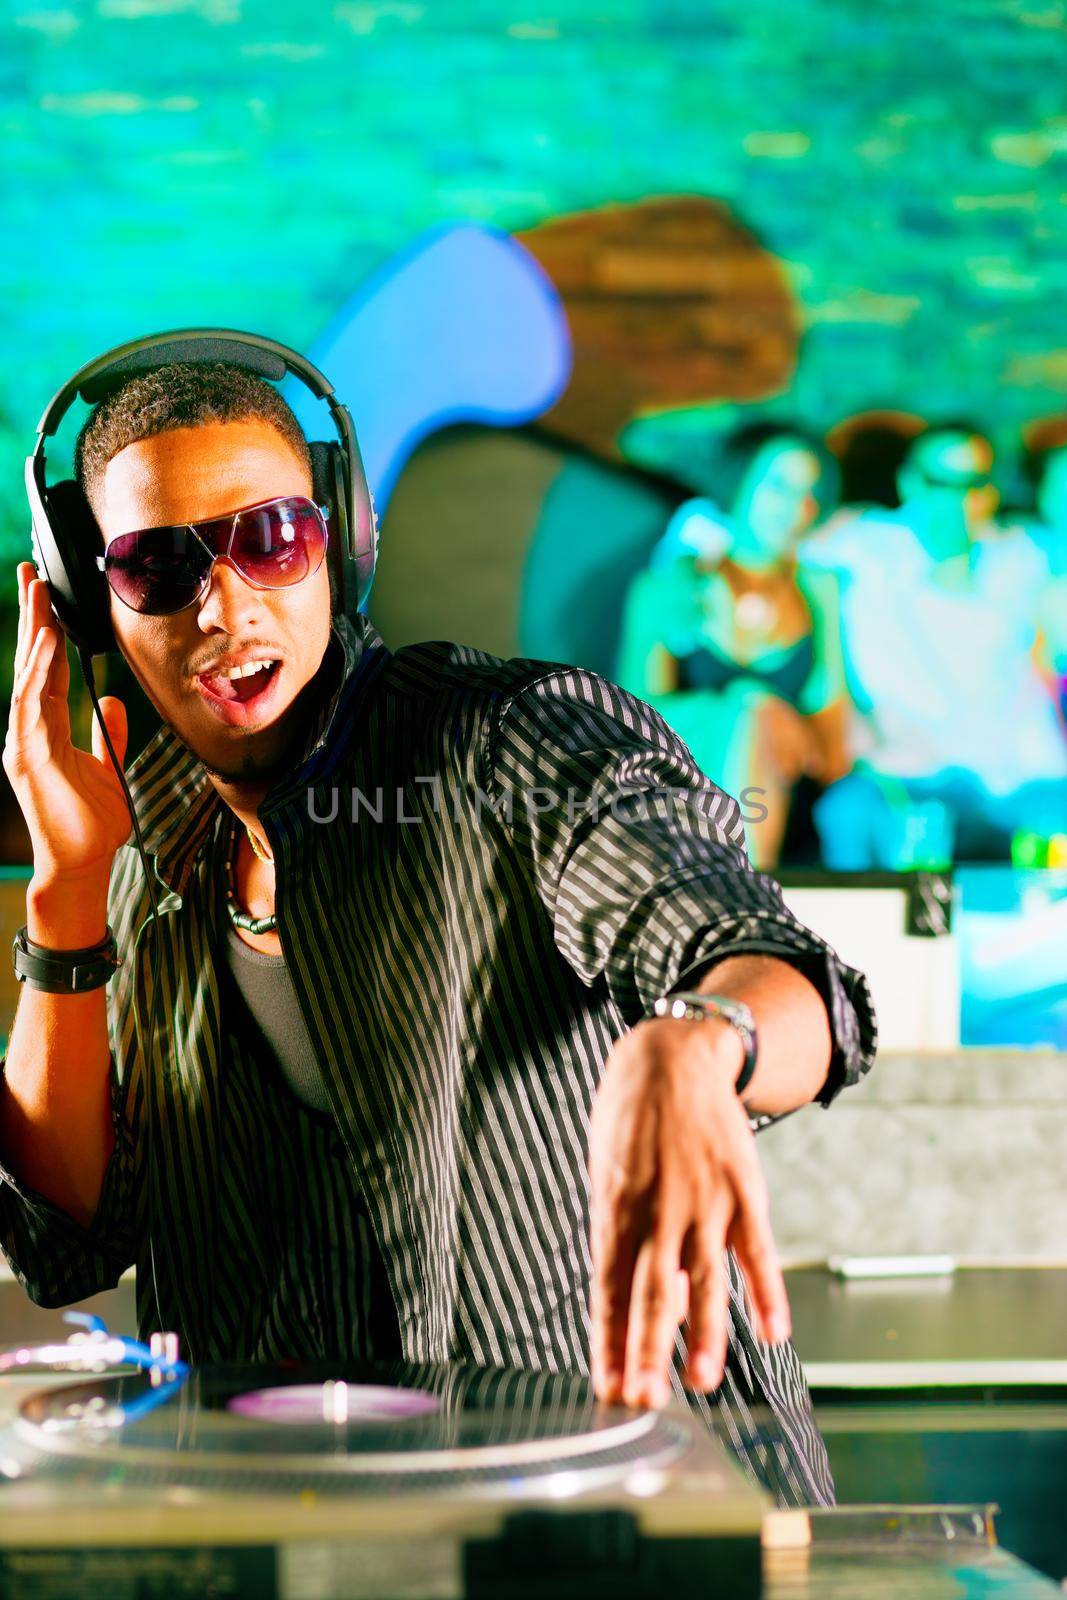 DJ in disco club, crowd background by Kzenon